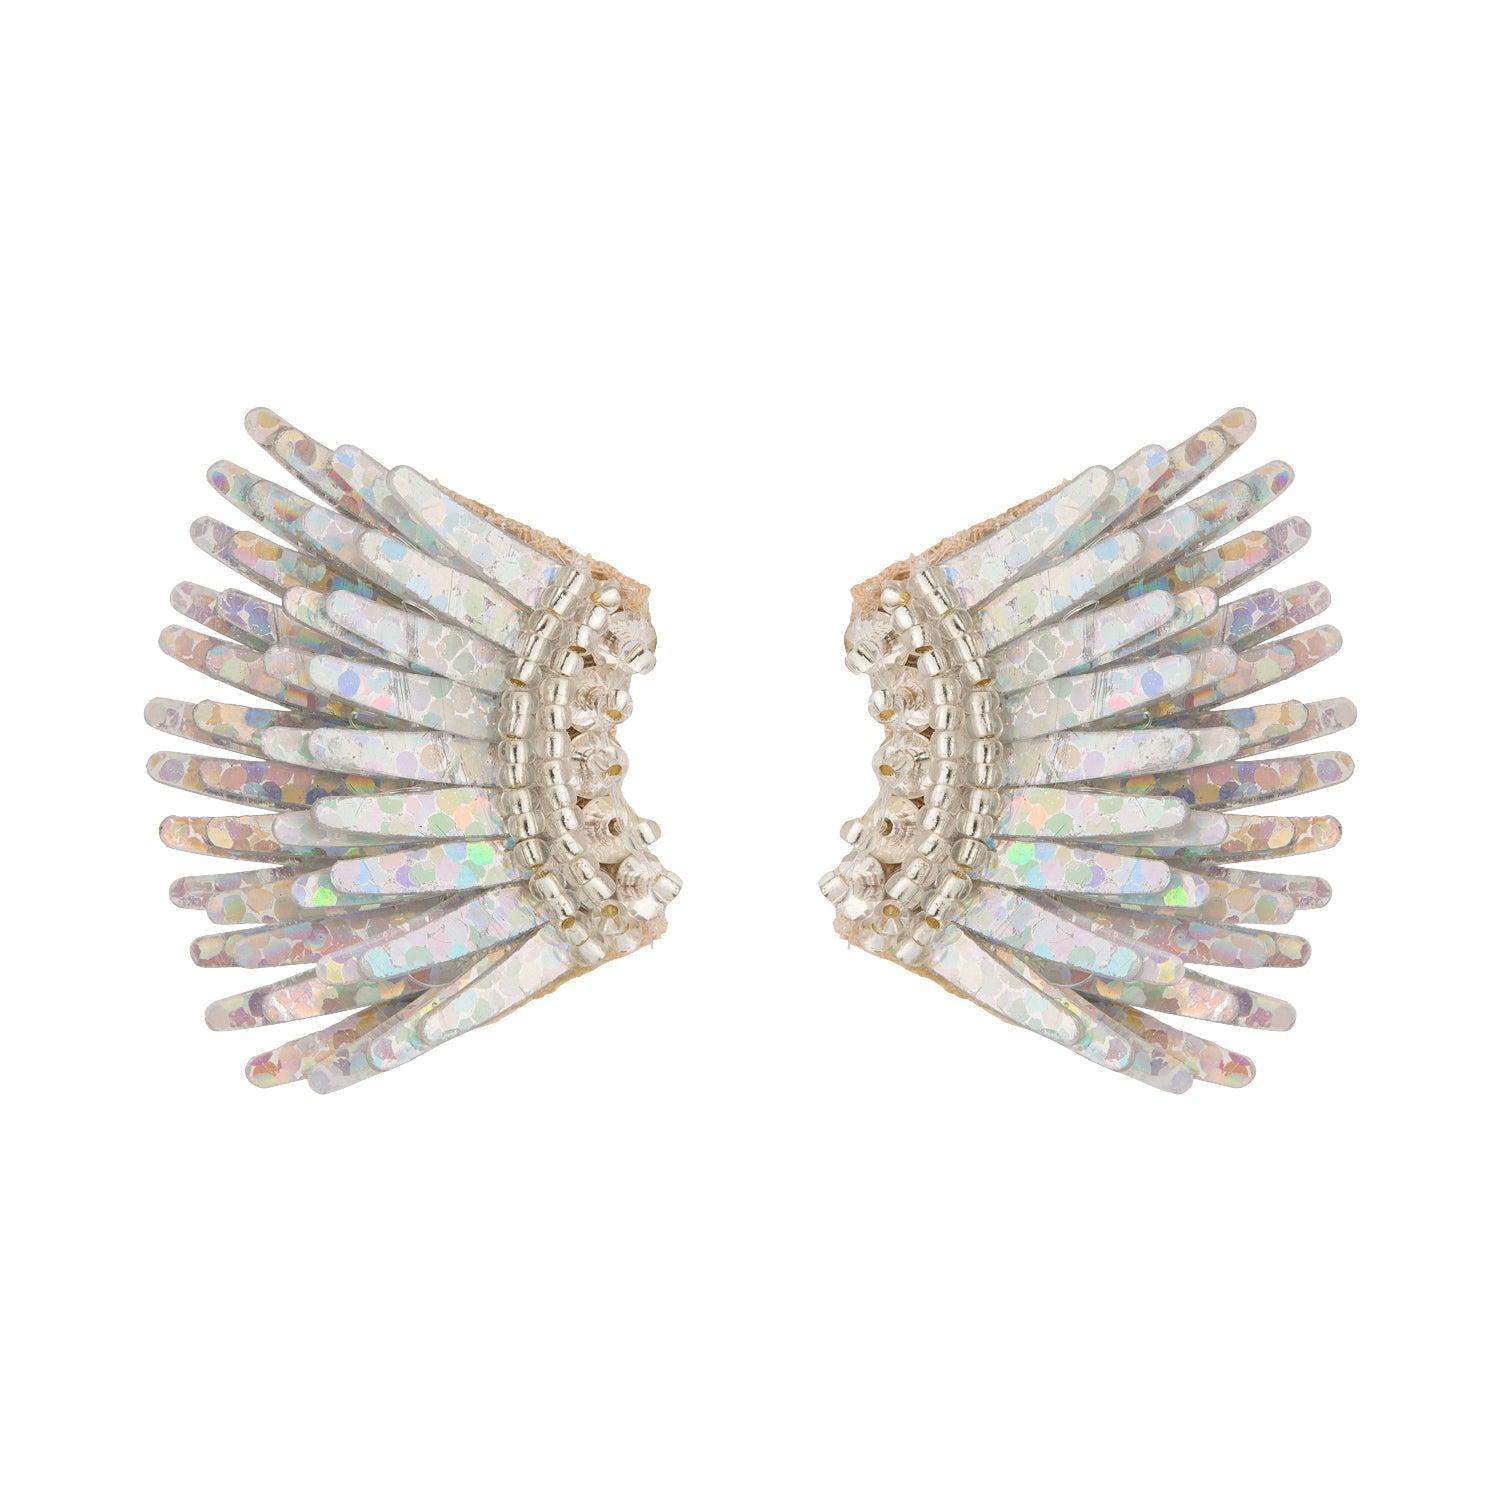 Micro Madeline Earrings Silver Glitter by Mignonne Gavigan